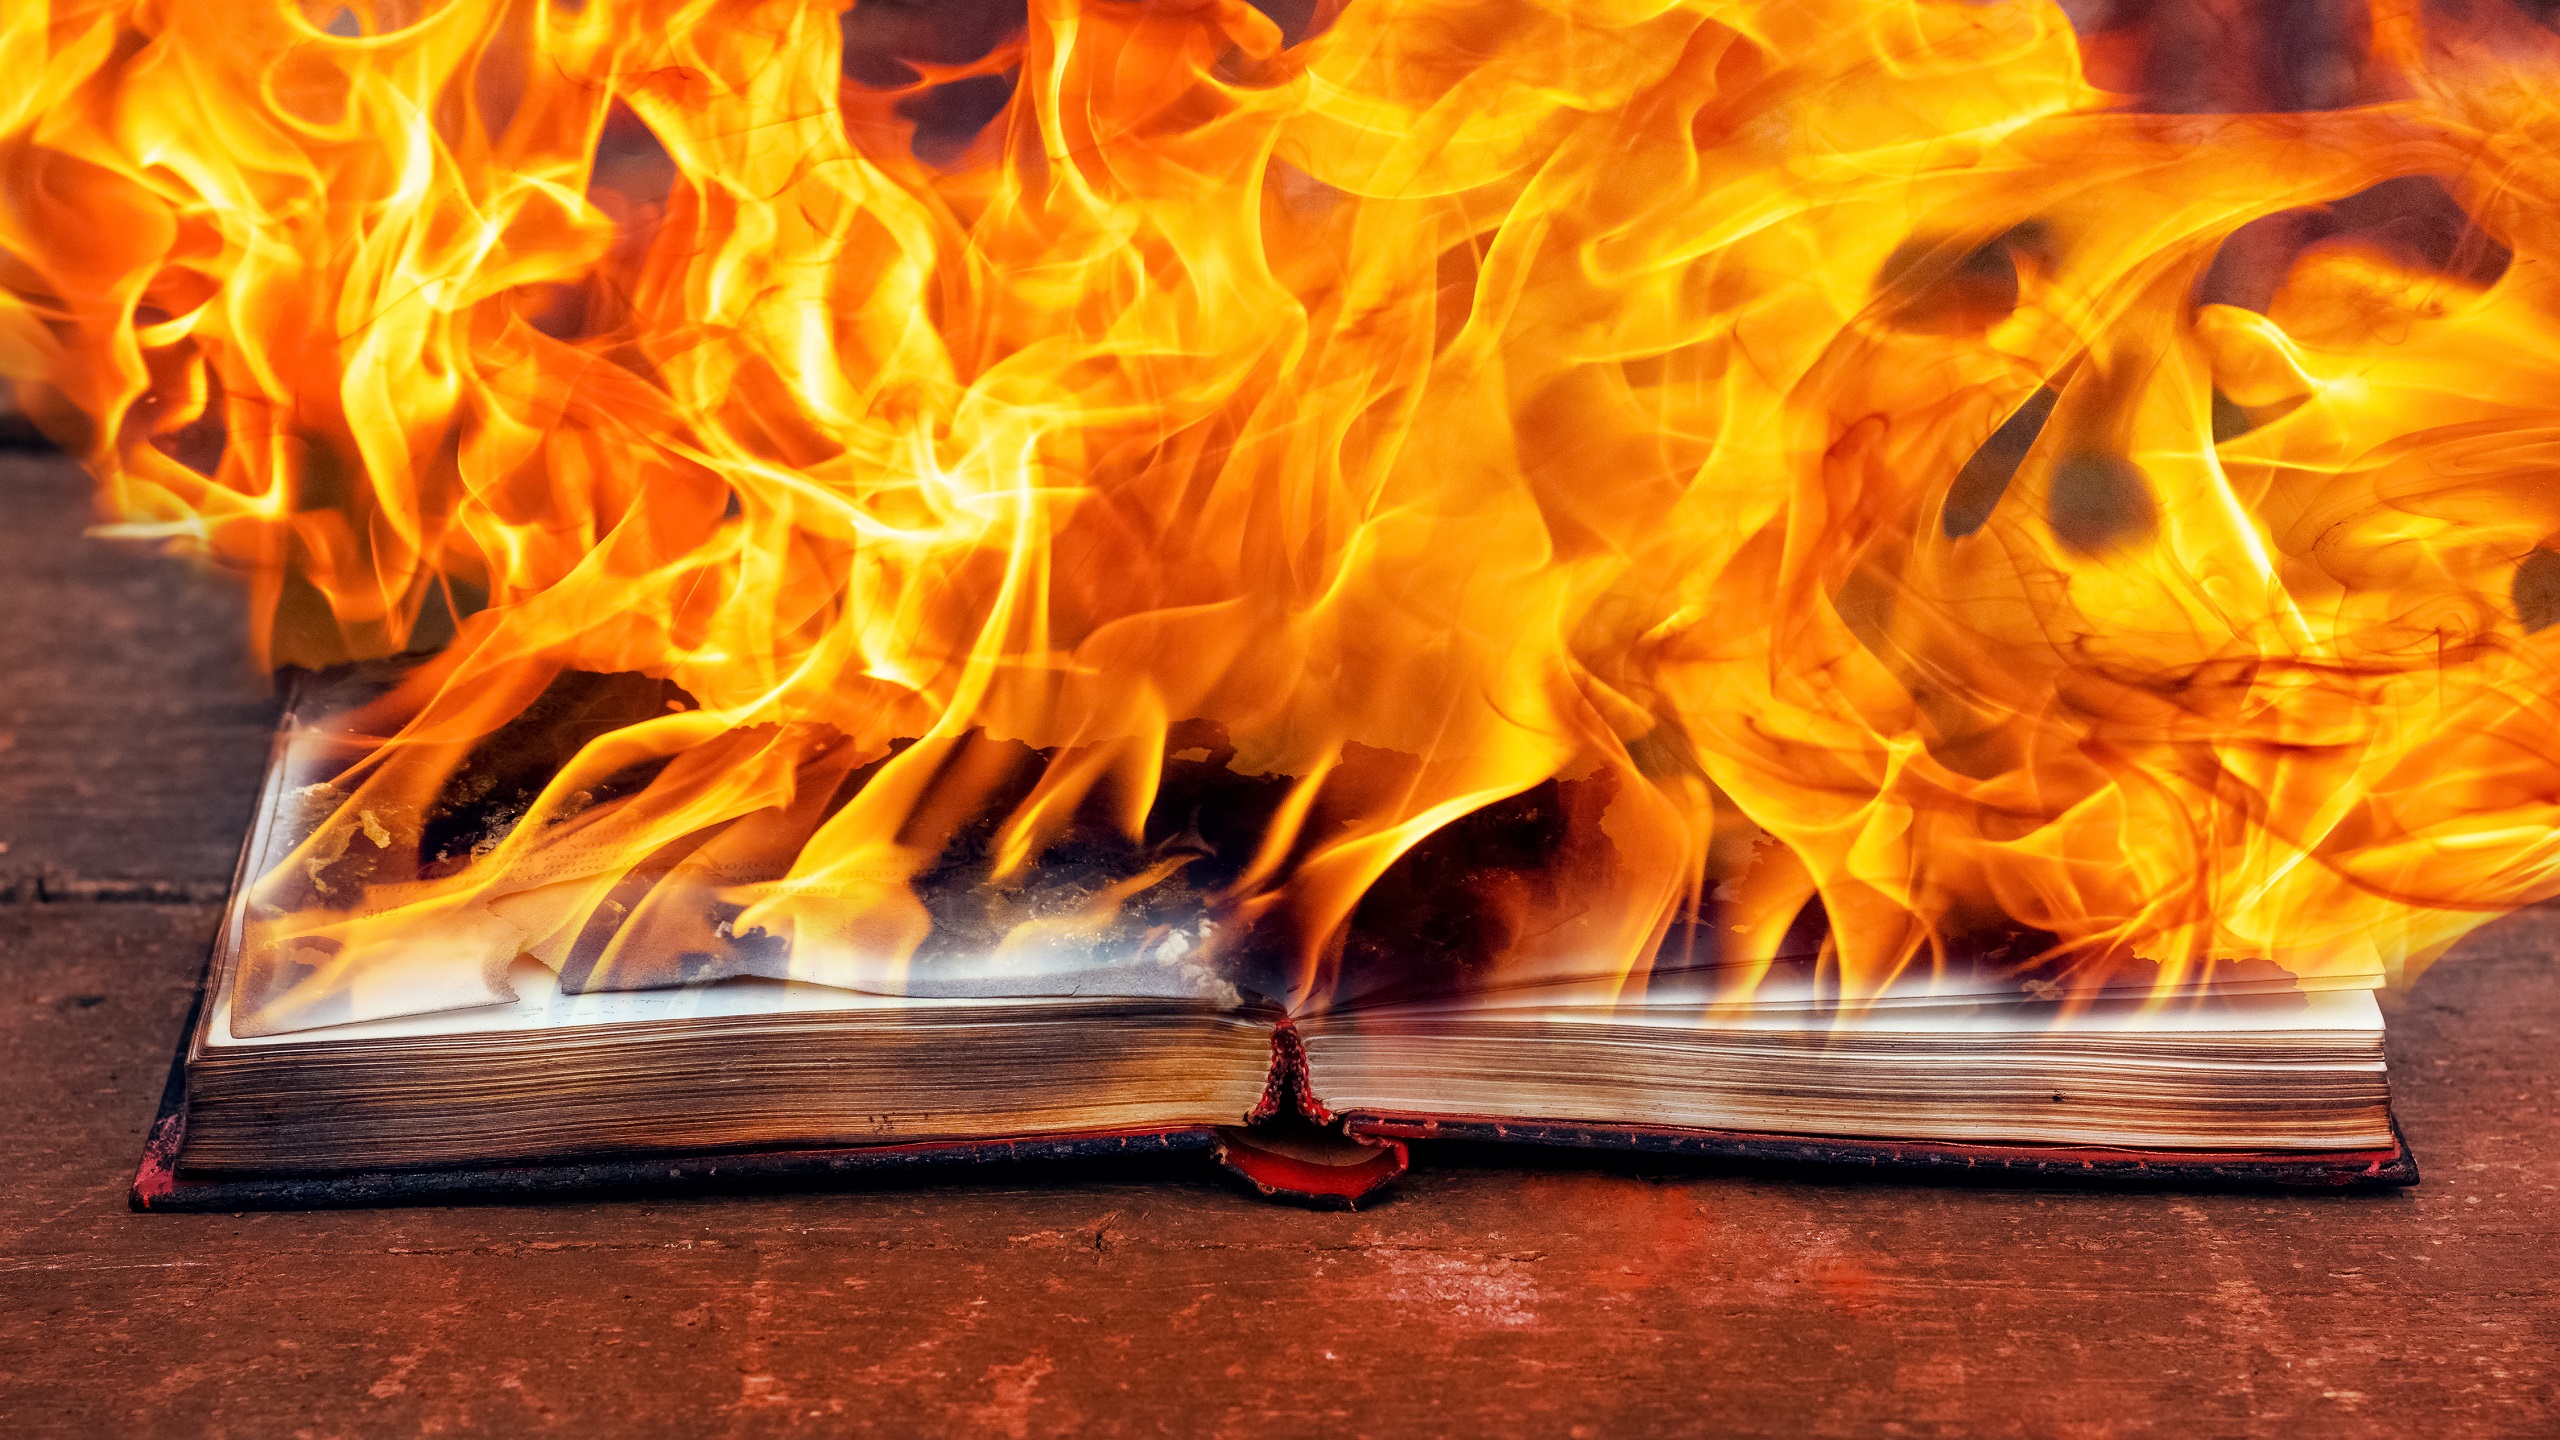 International Outrage Flares Over Quran Desecration in Sweden, Denmark